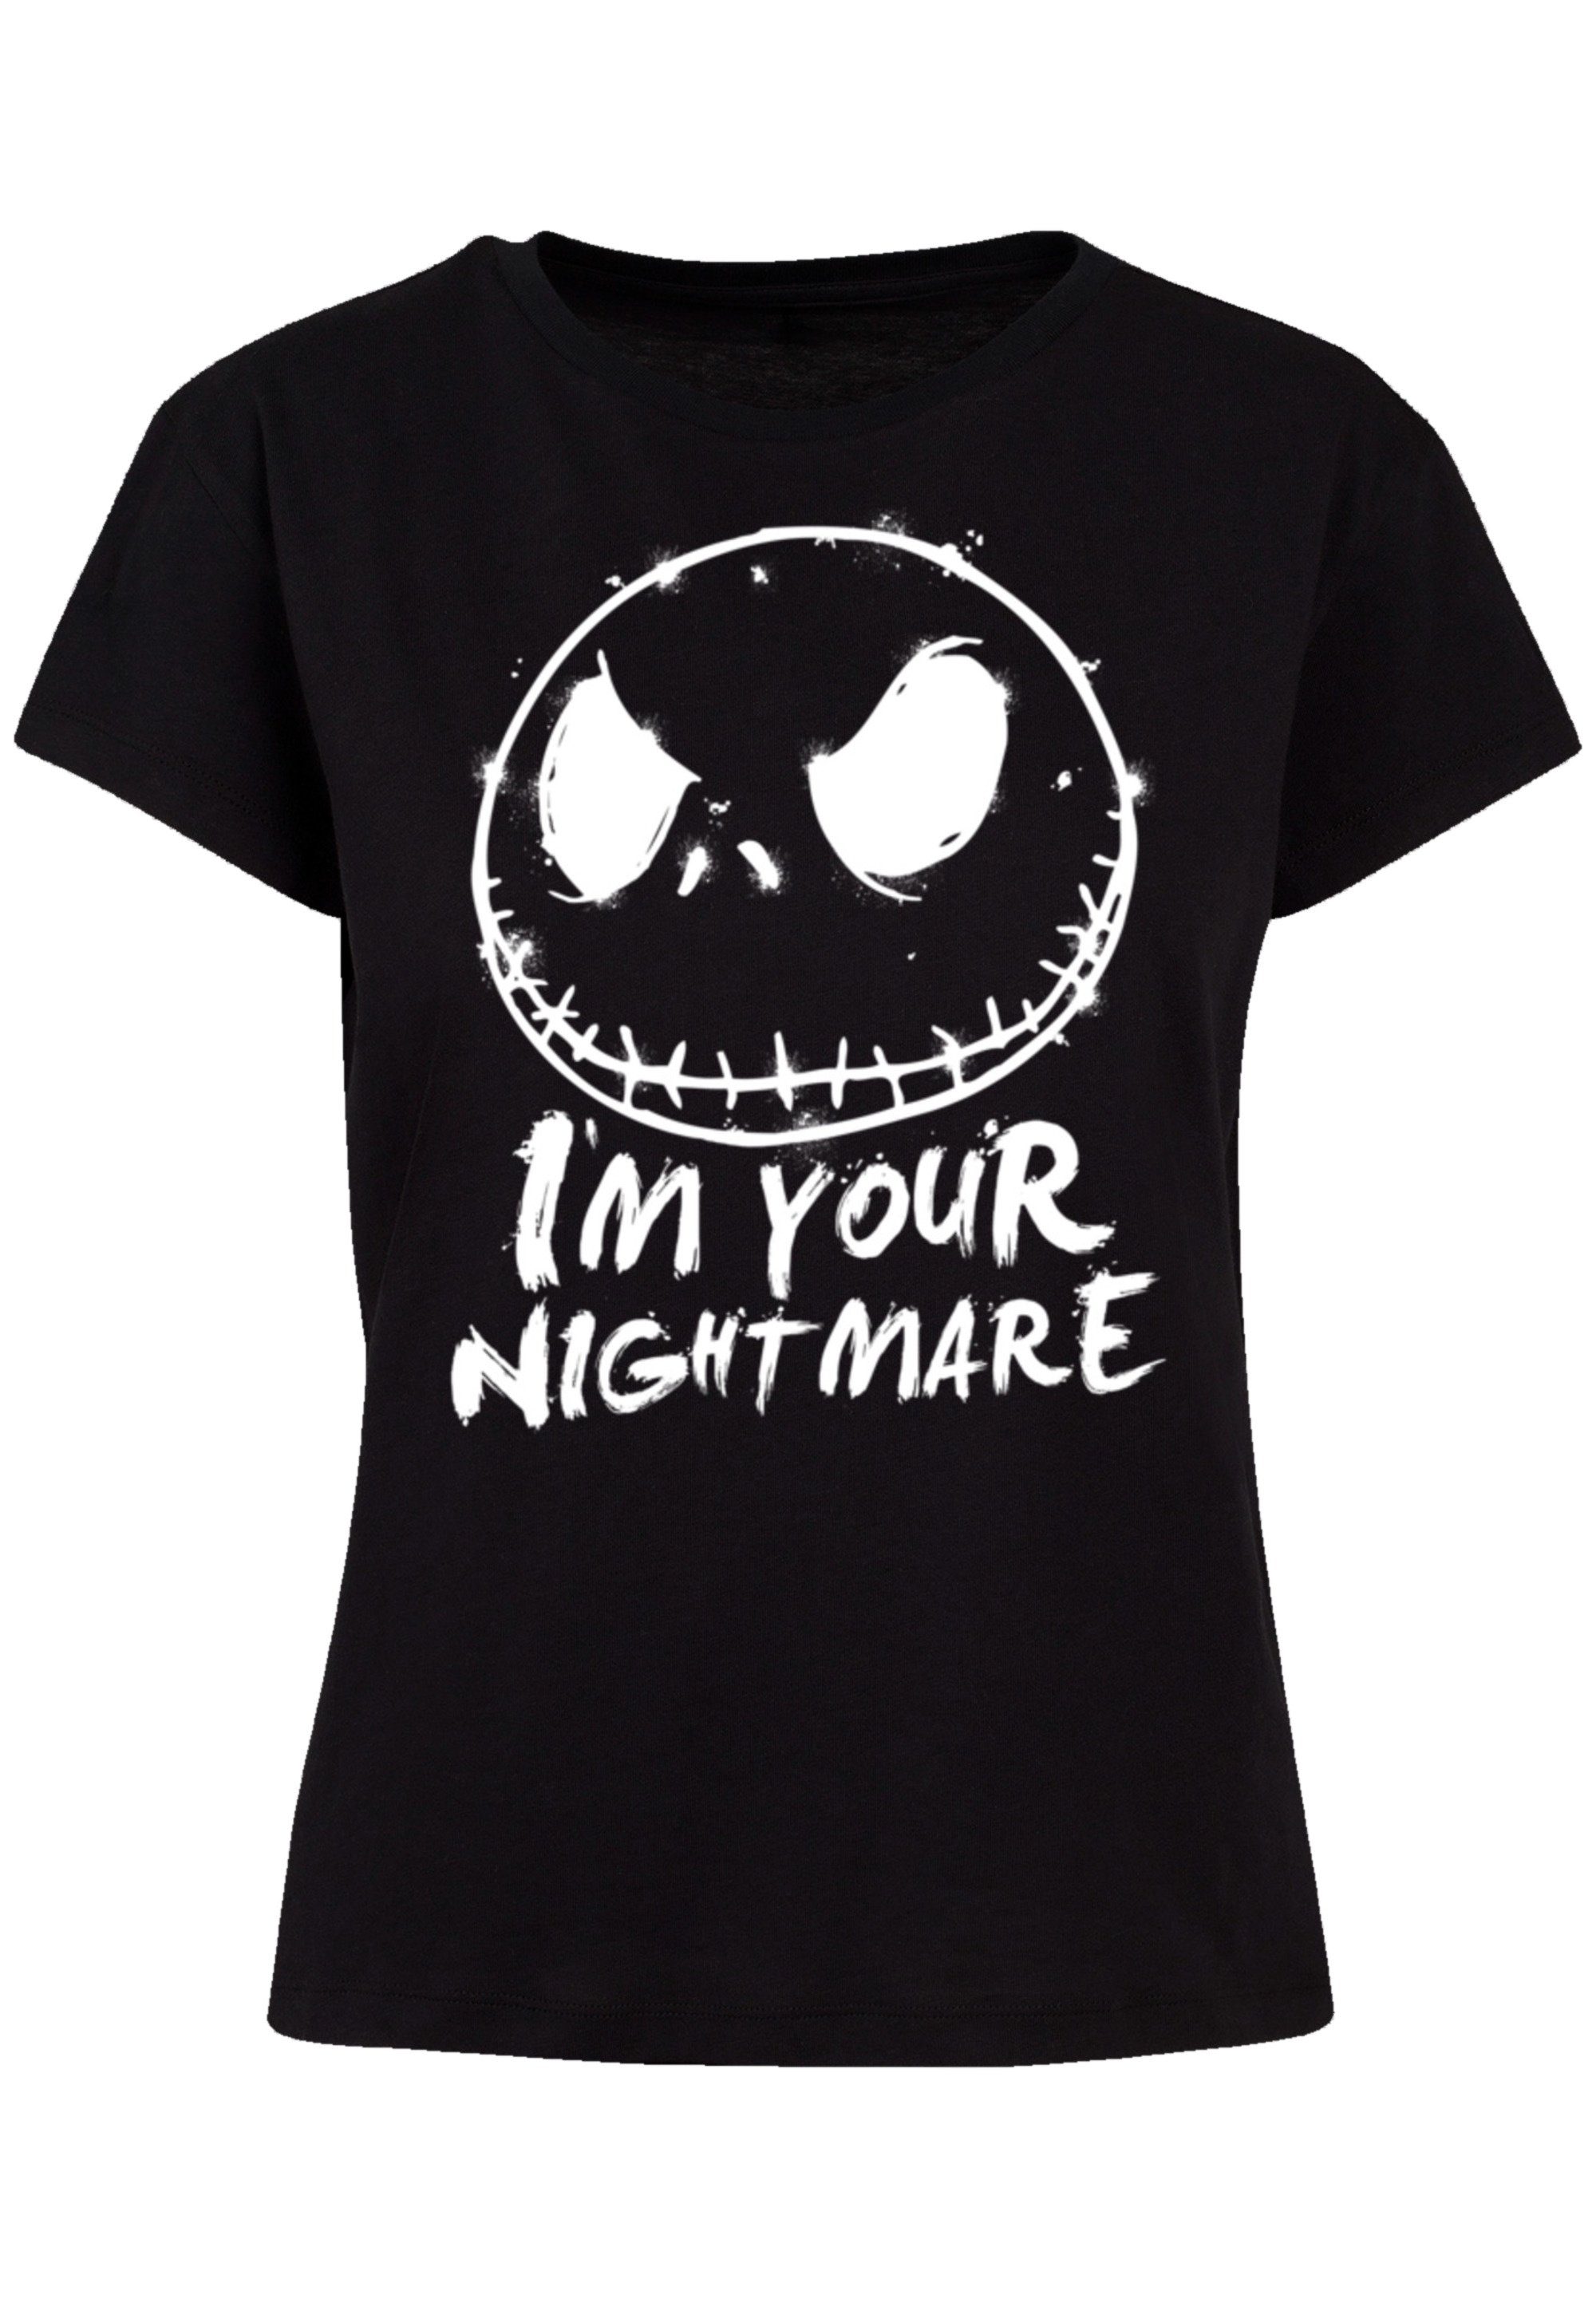 Nightmare Splatter Christmas Verarbeitung T-Shirt Qualität, F4NT4STIC Premium Passform Before und Disney Perfekte hochwertige